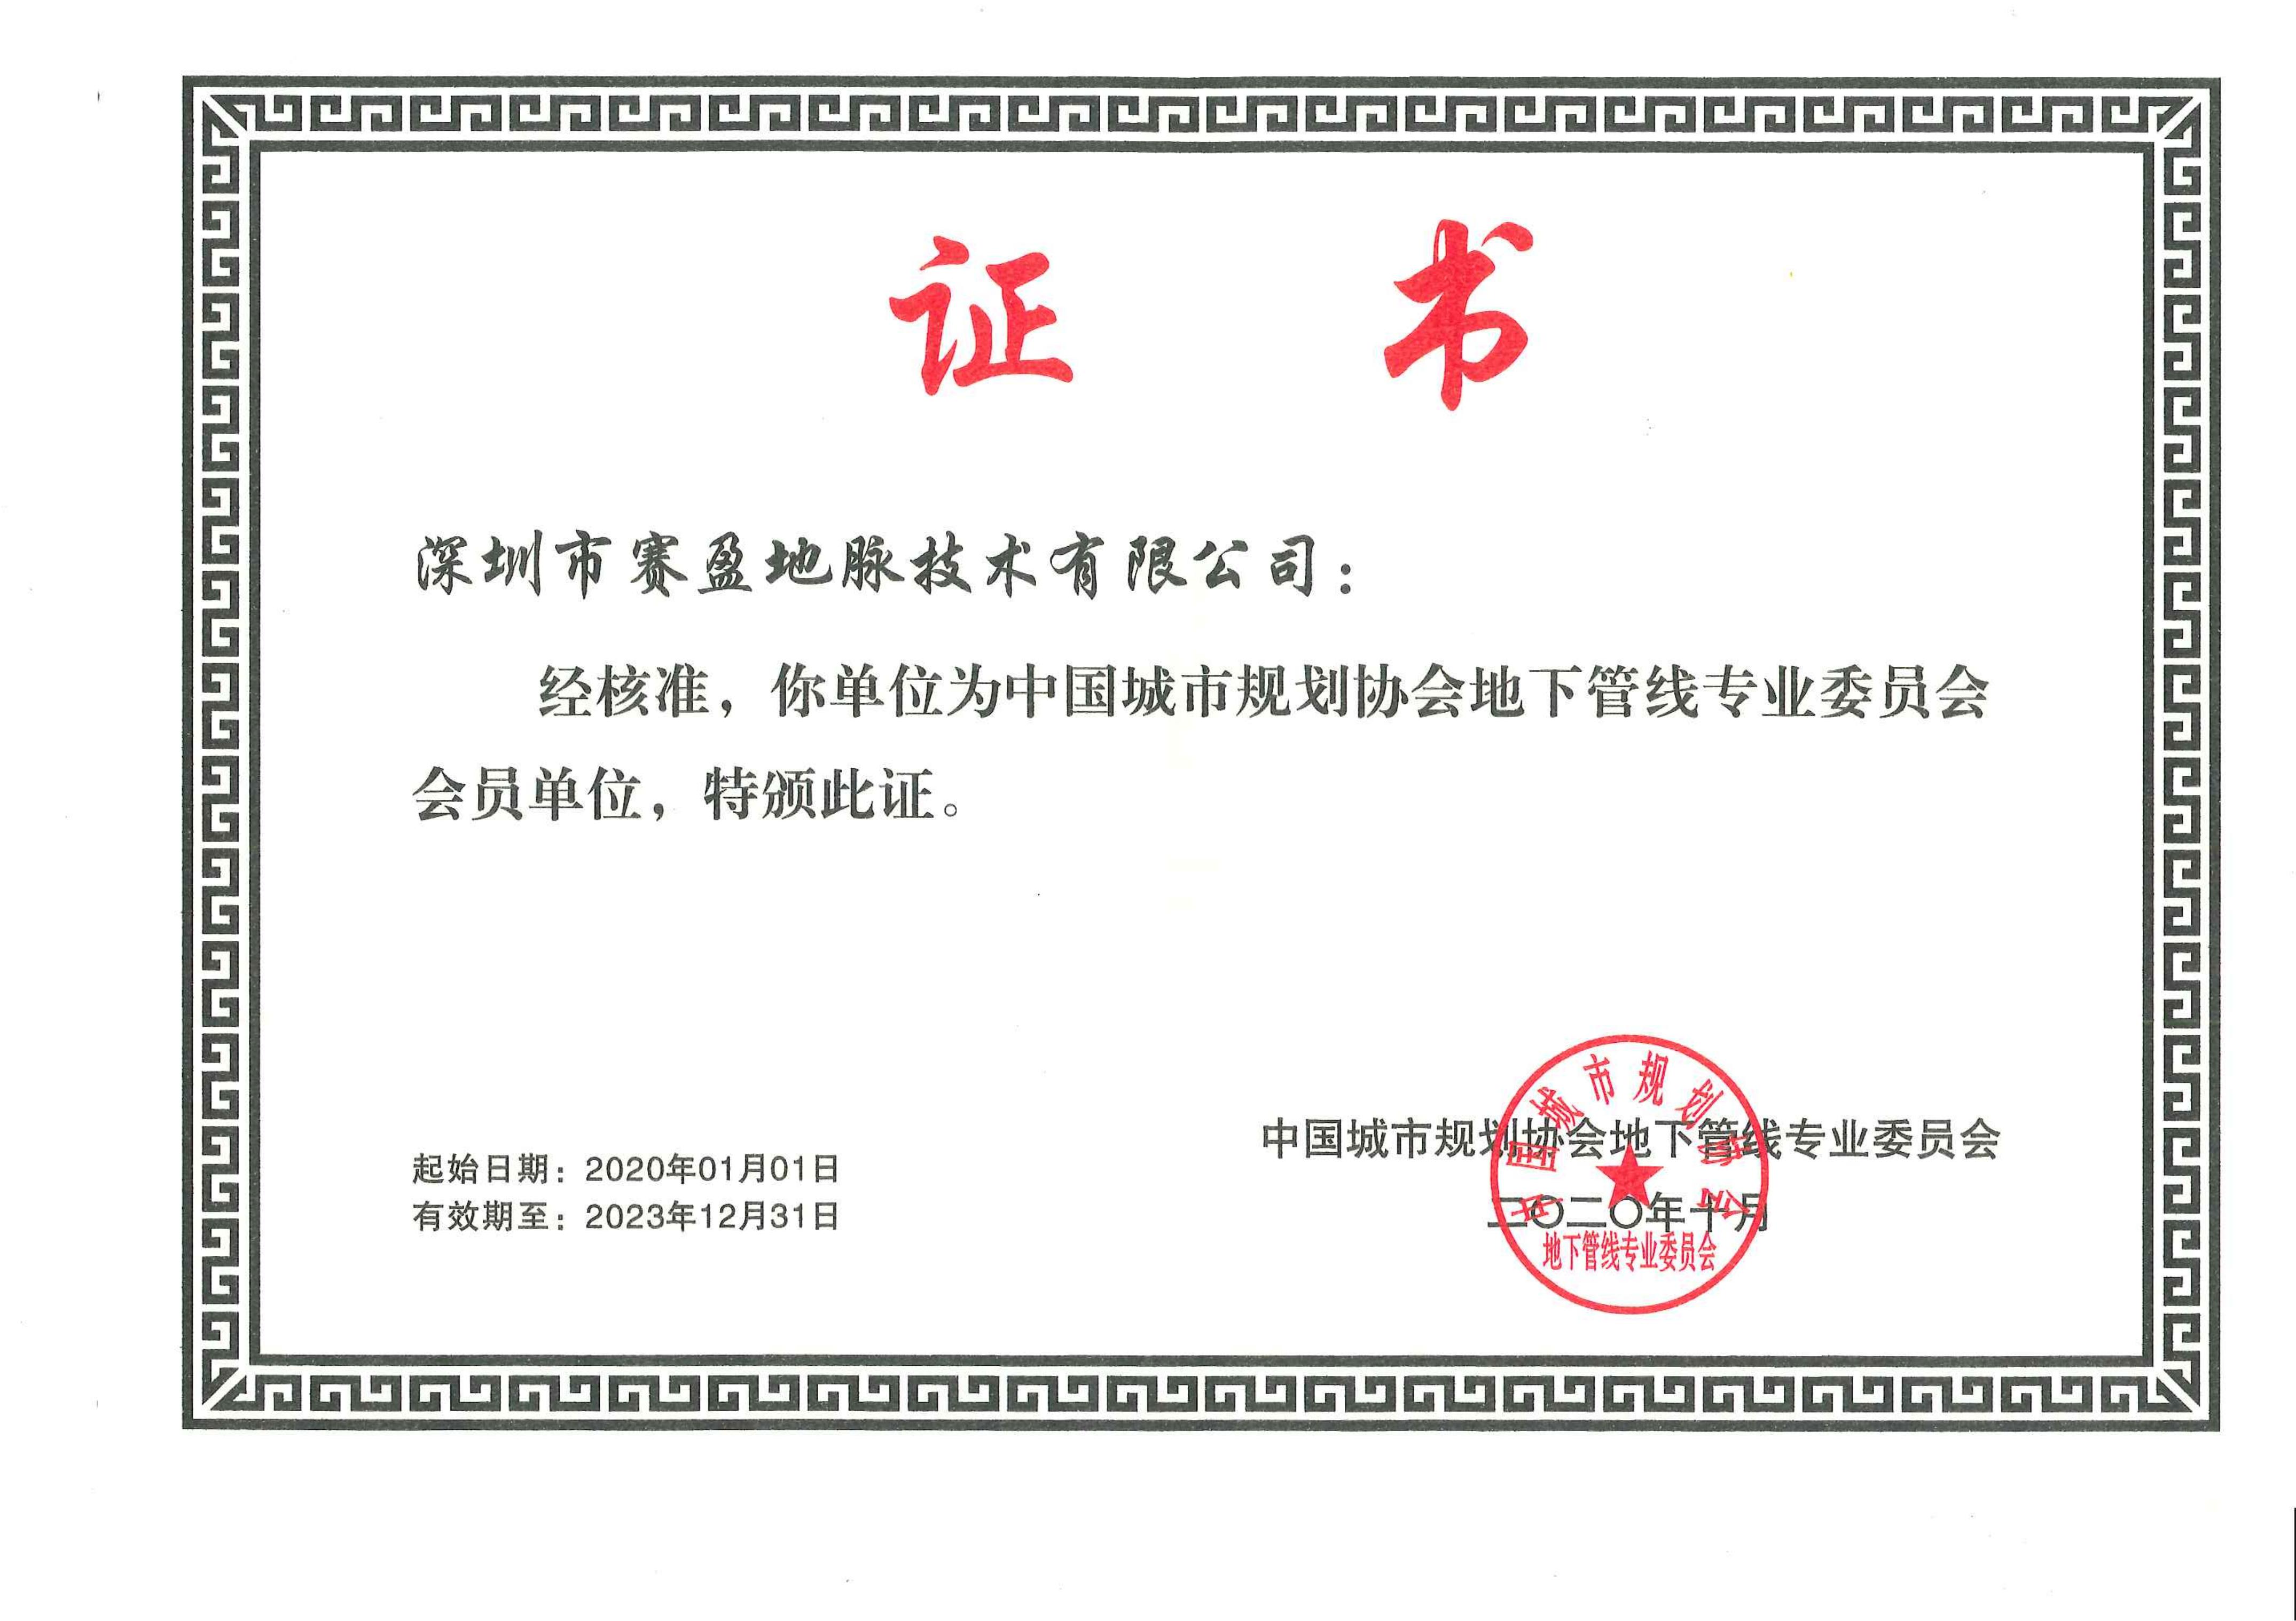 中国城市规划协会底下管网专业委员会会员证书_00.jpg